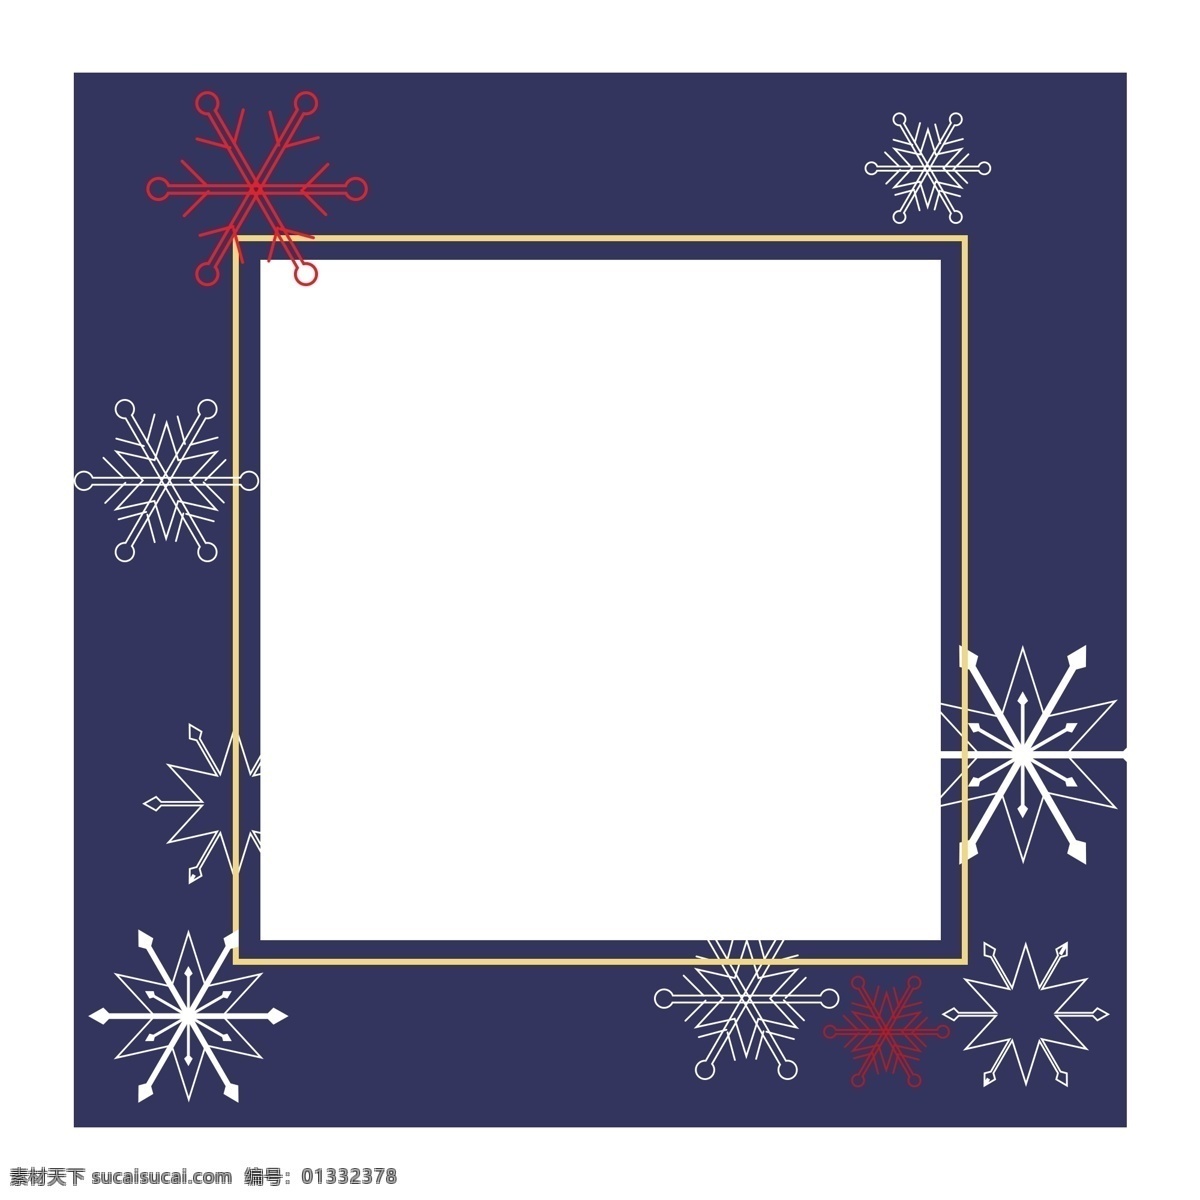 圣诞节 雪花 边框 插画 圣诞节边框 唯美边框 创意边框 圣诞节快乐 边框插画 红色的雪花 蓝色的边框